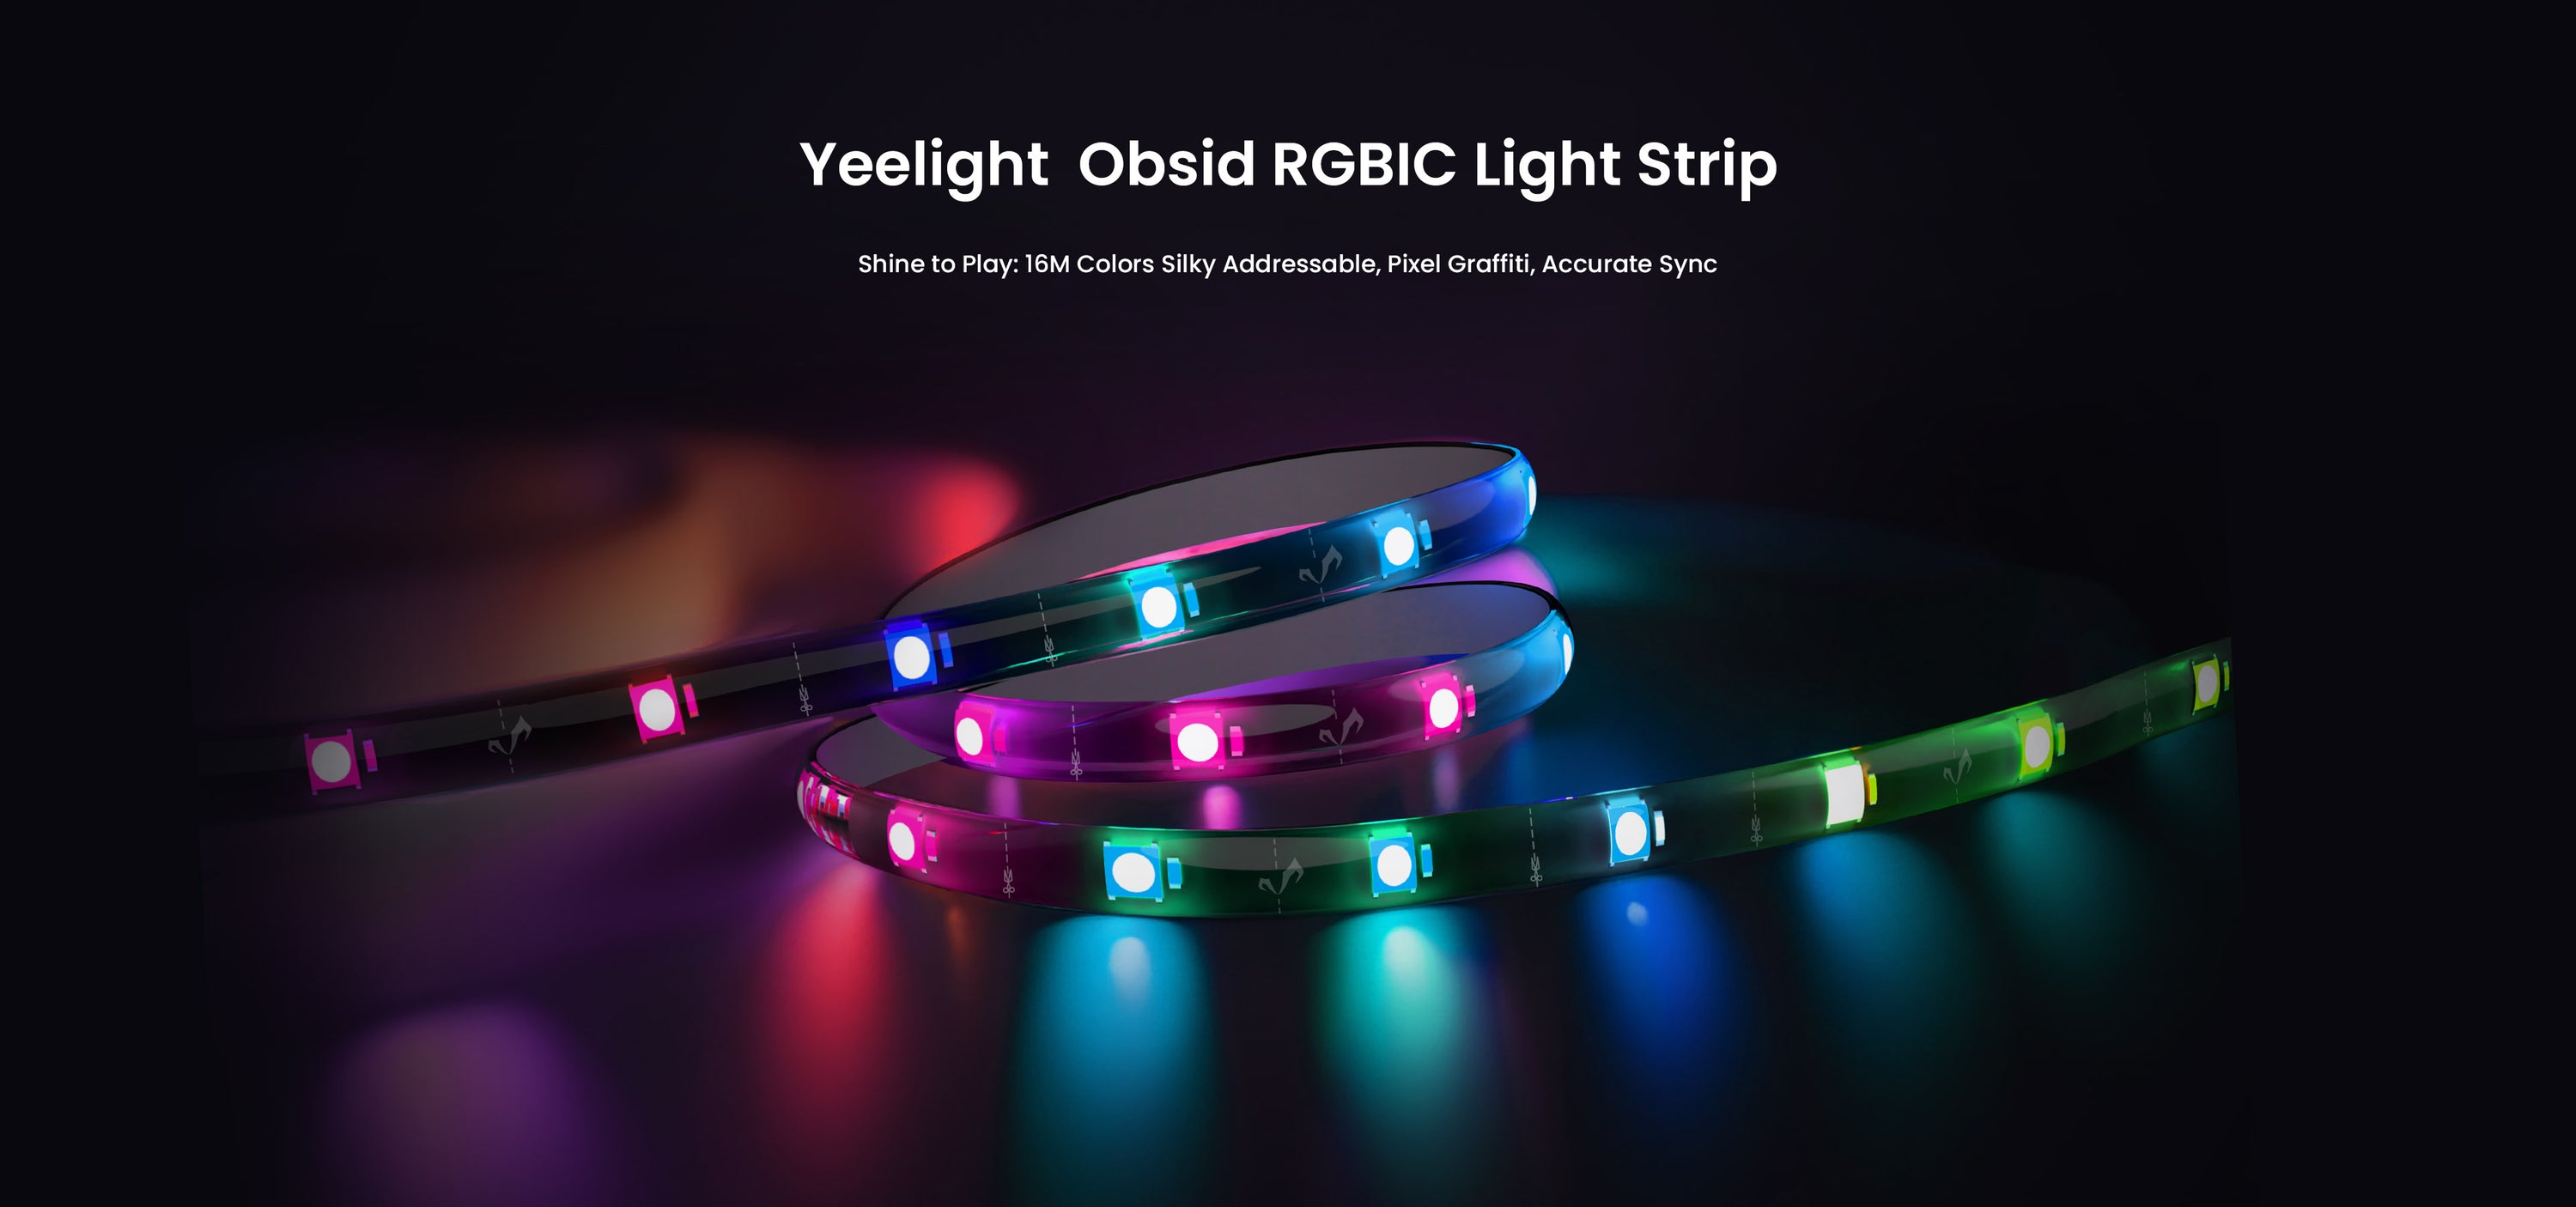 Yeelight lanserade Obsid RGBIC LED-ljusremsan, som kan synkroniseras med musik och spel